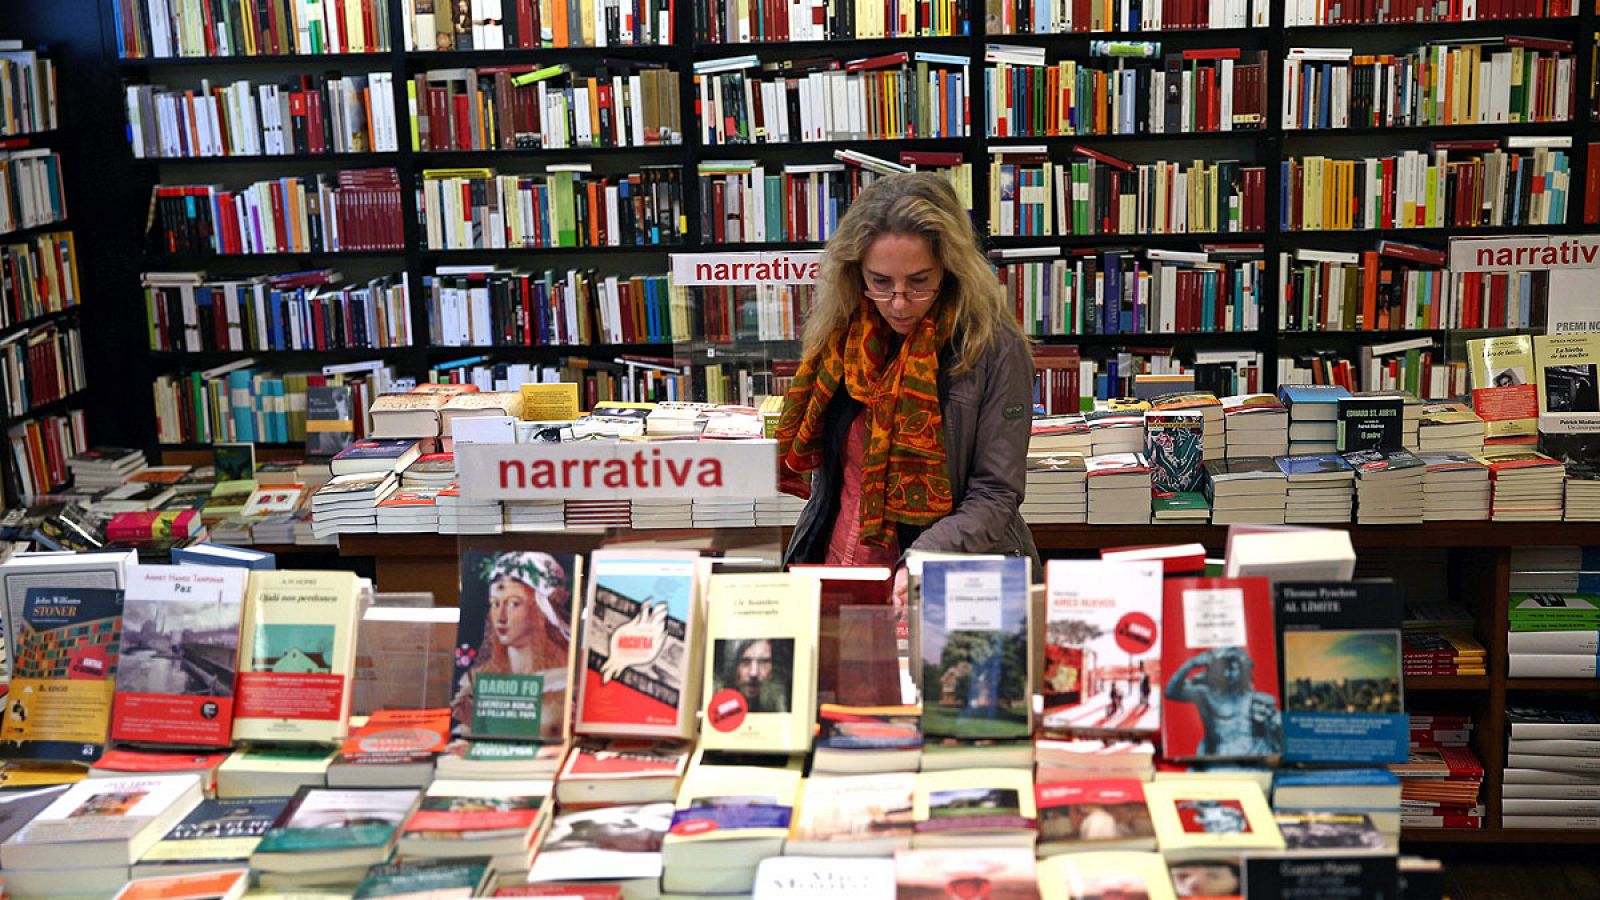 En España existen más de 4.000 puntos de venta de libros.